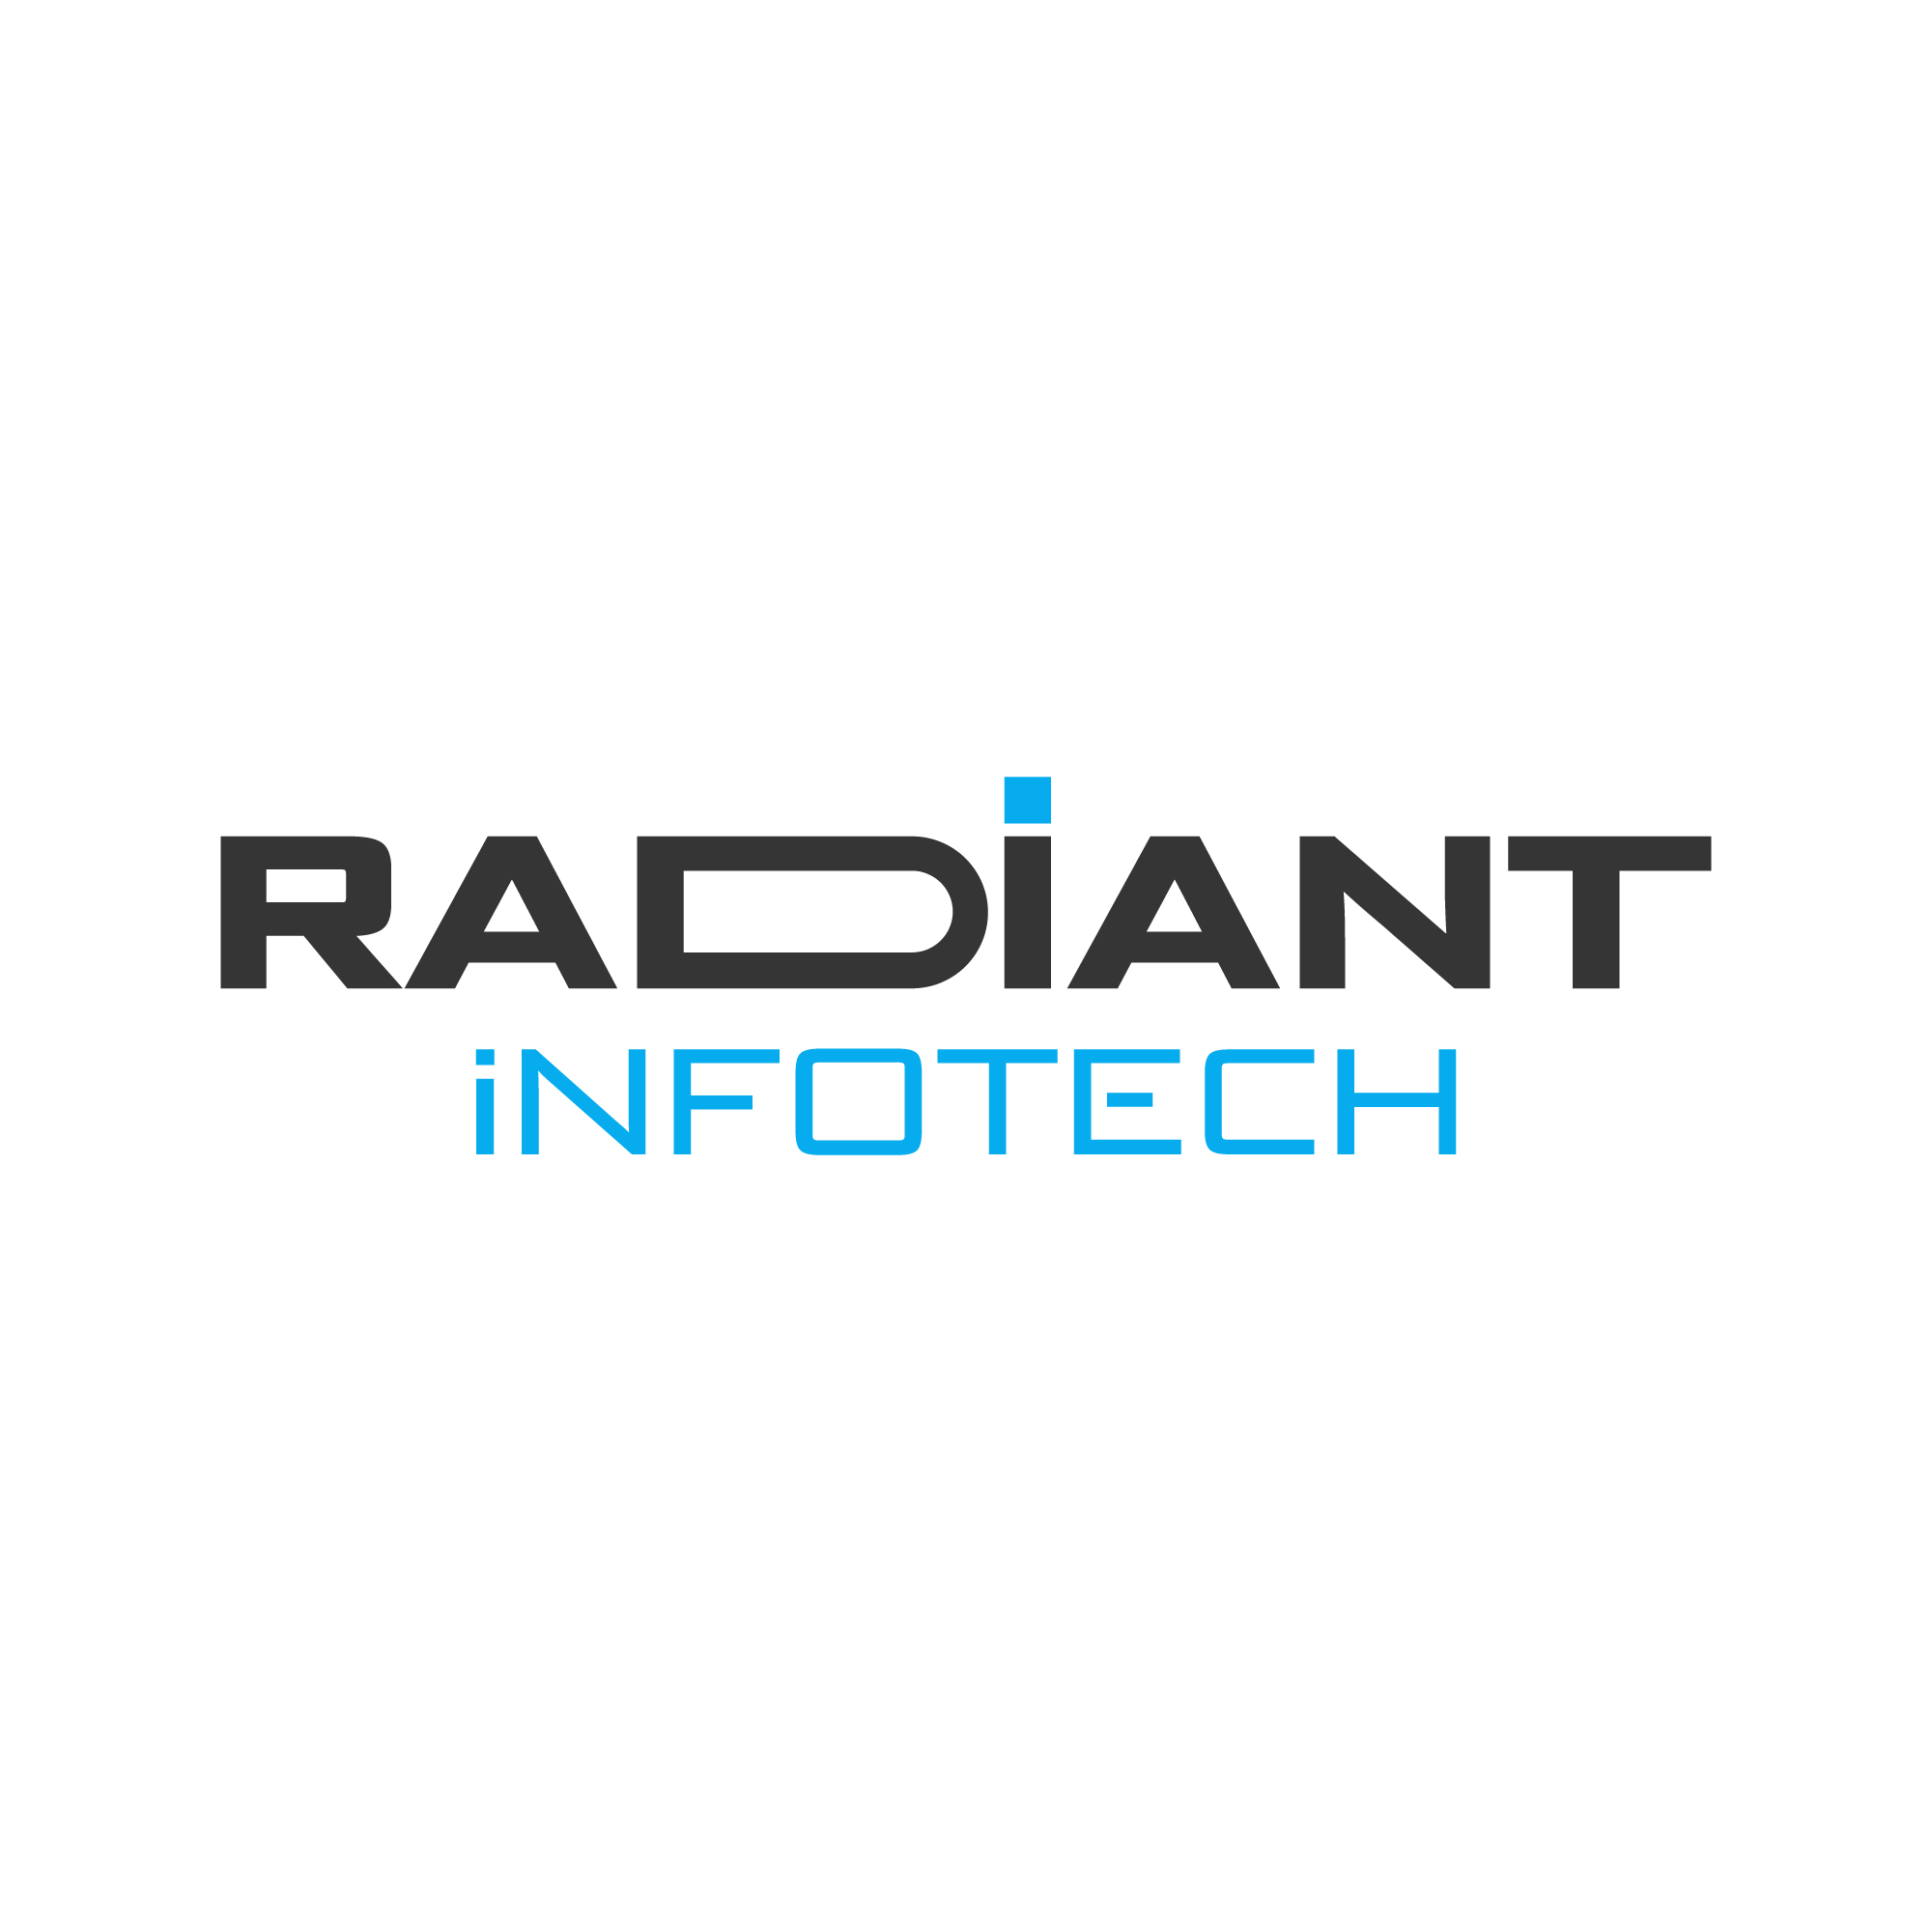 Radiant Infotech For PNP